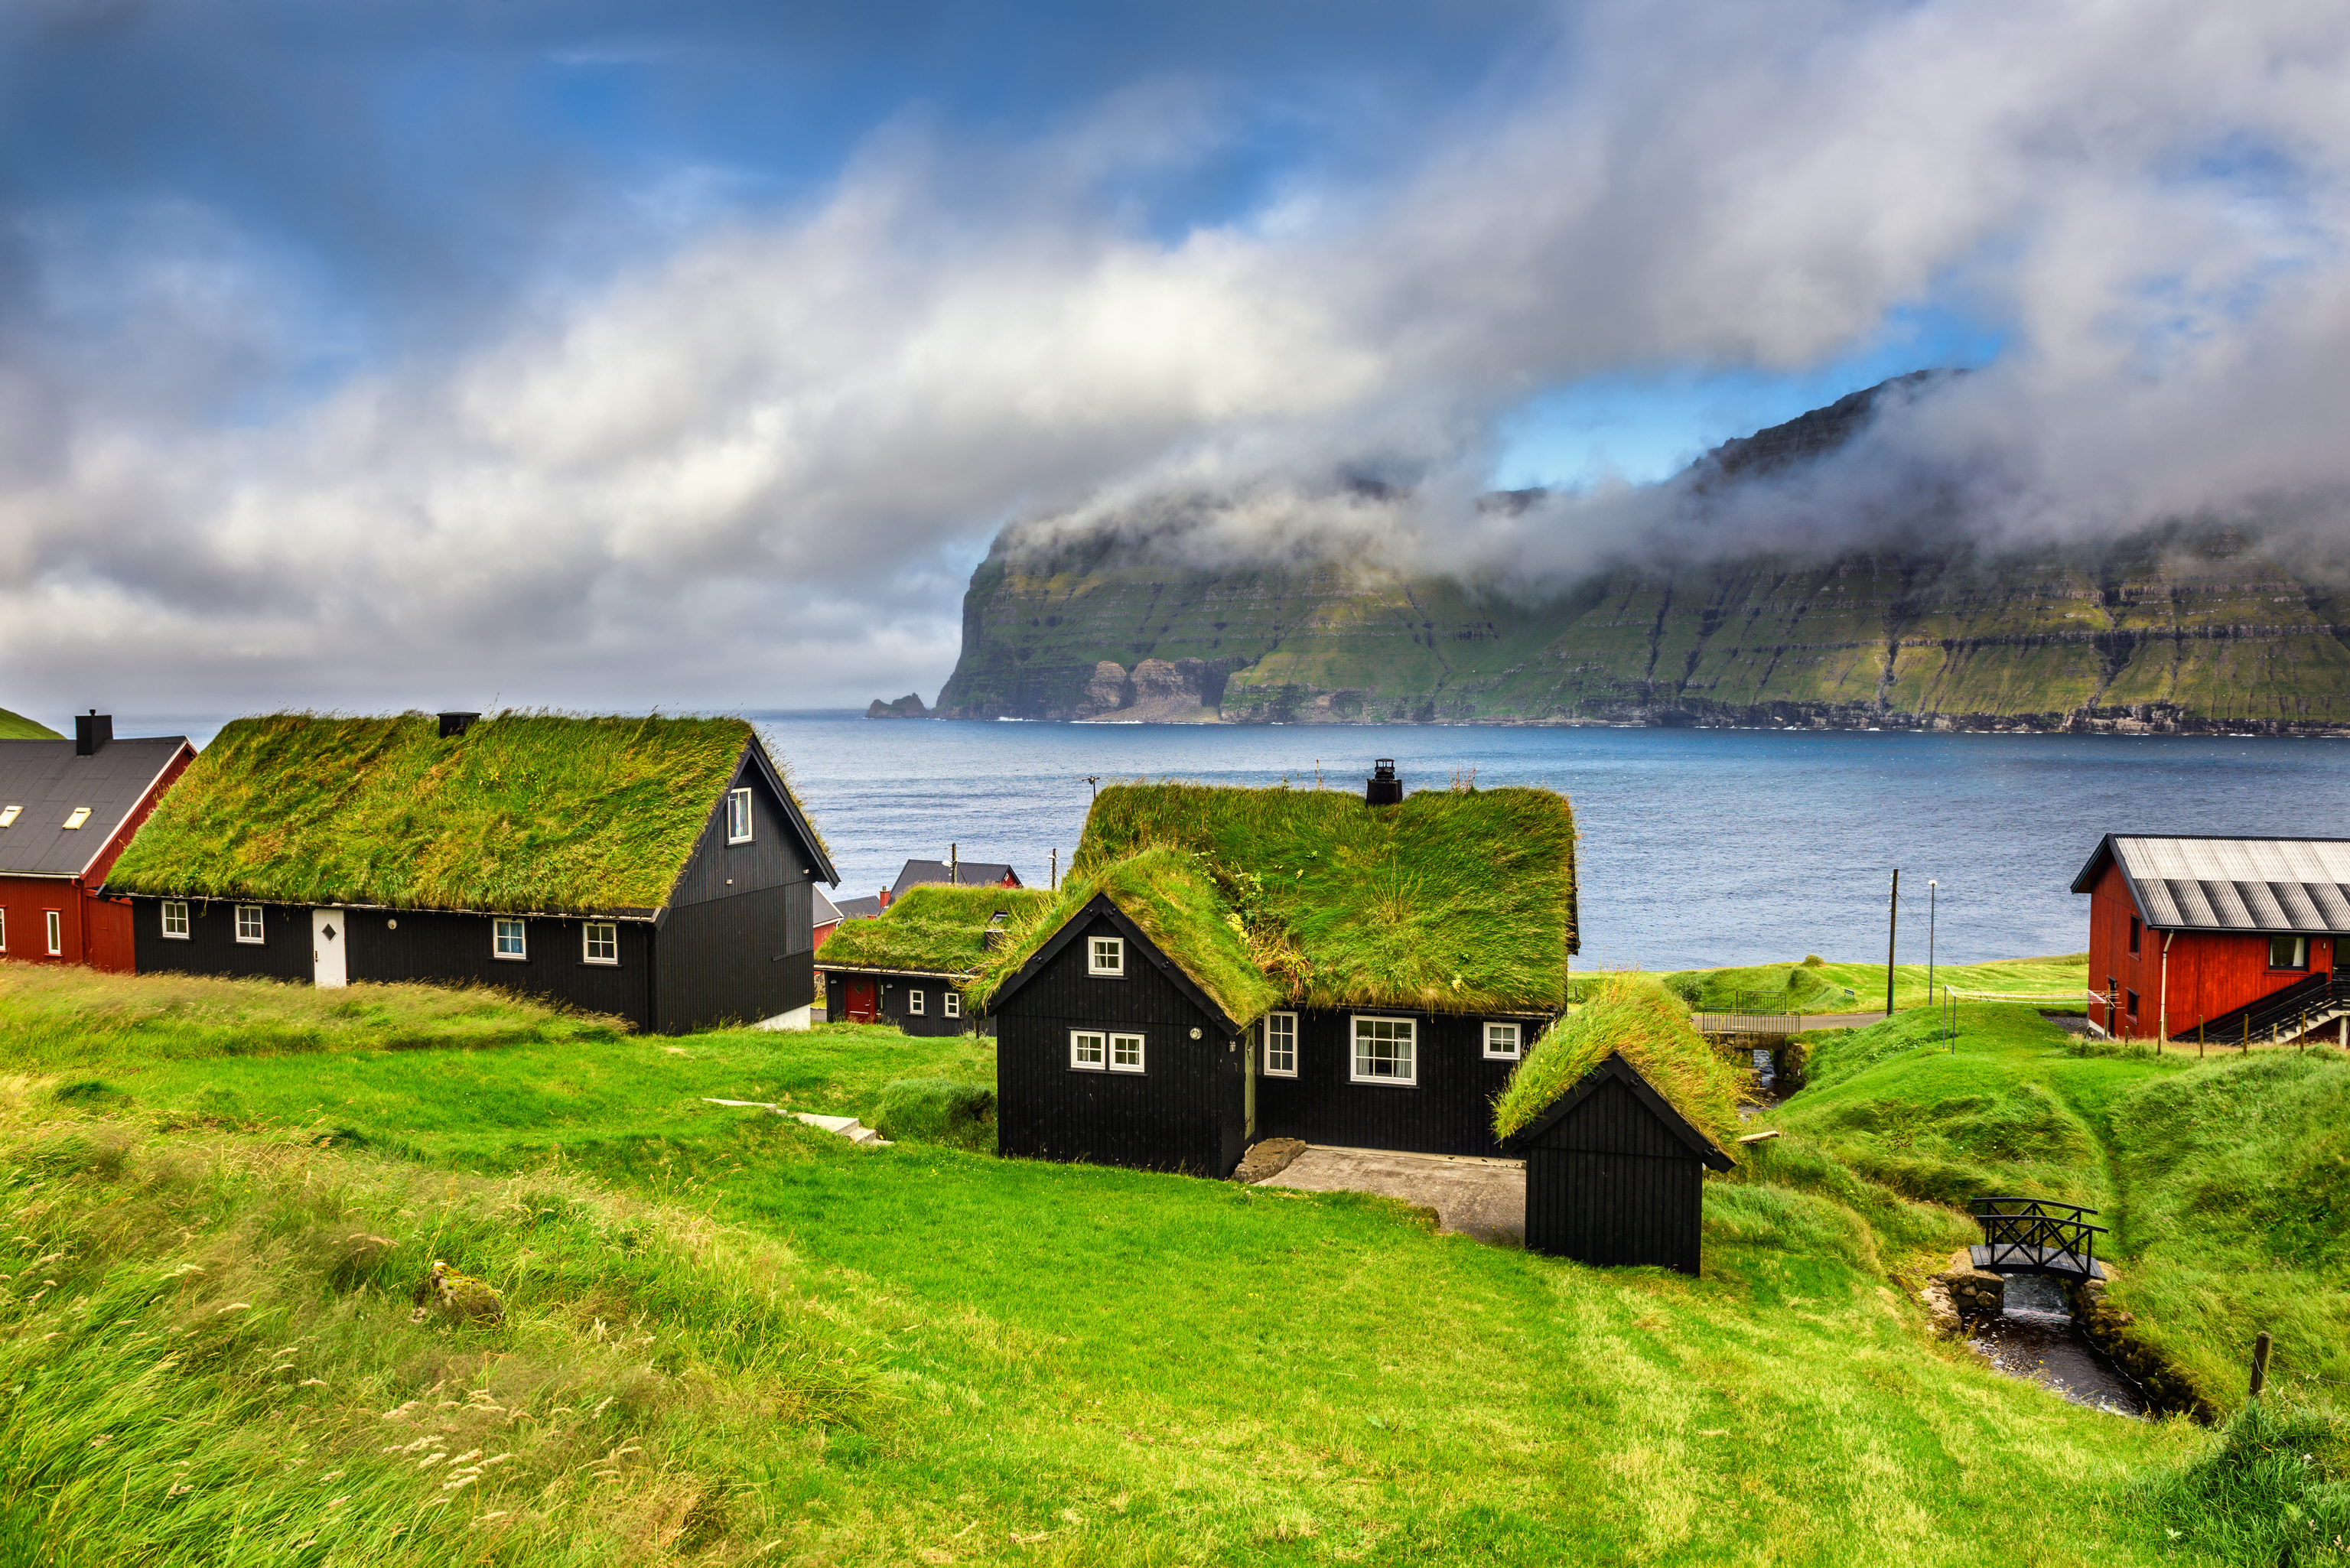 Las casitas con hierba en los tejados típicas de Islas Feroe.